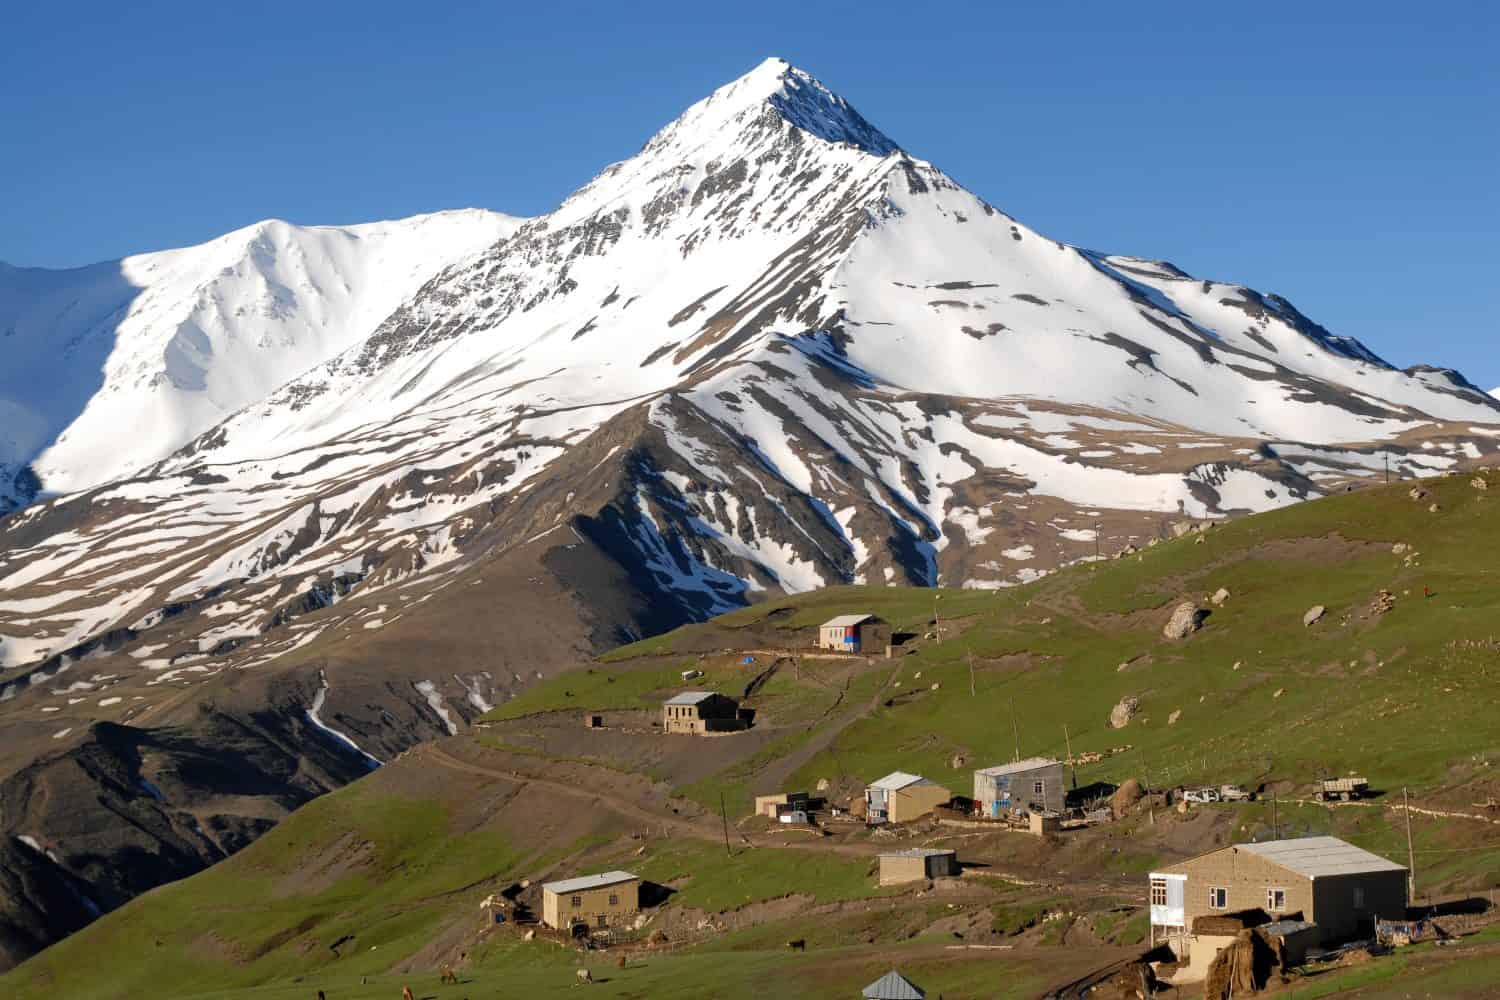 Villaggio di Kurush (il punto più meridionale della Russia e l'insediamento montano più alto d'Europa, 2560 m) e il monte Bazarduzu (4.467 m, la vetta più alta dell'Azerbaigian).  Daghestan, Caucaso settentrionale, Russia.